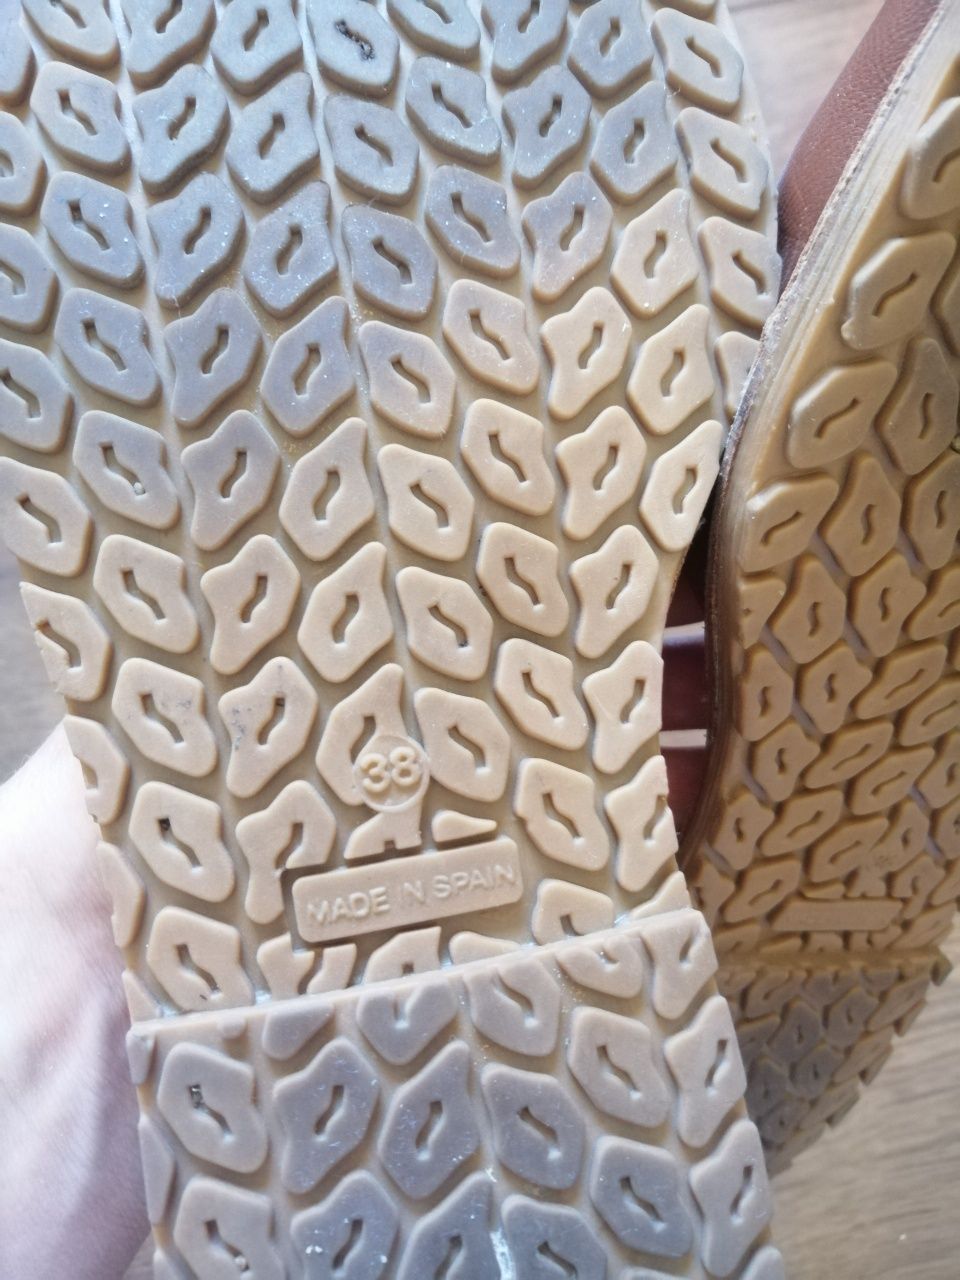 Kultowe hiszpańskie sandały damskie skórzane Avarca Minorquina rozmiar